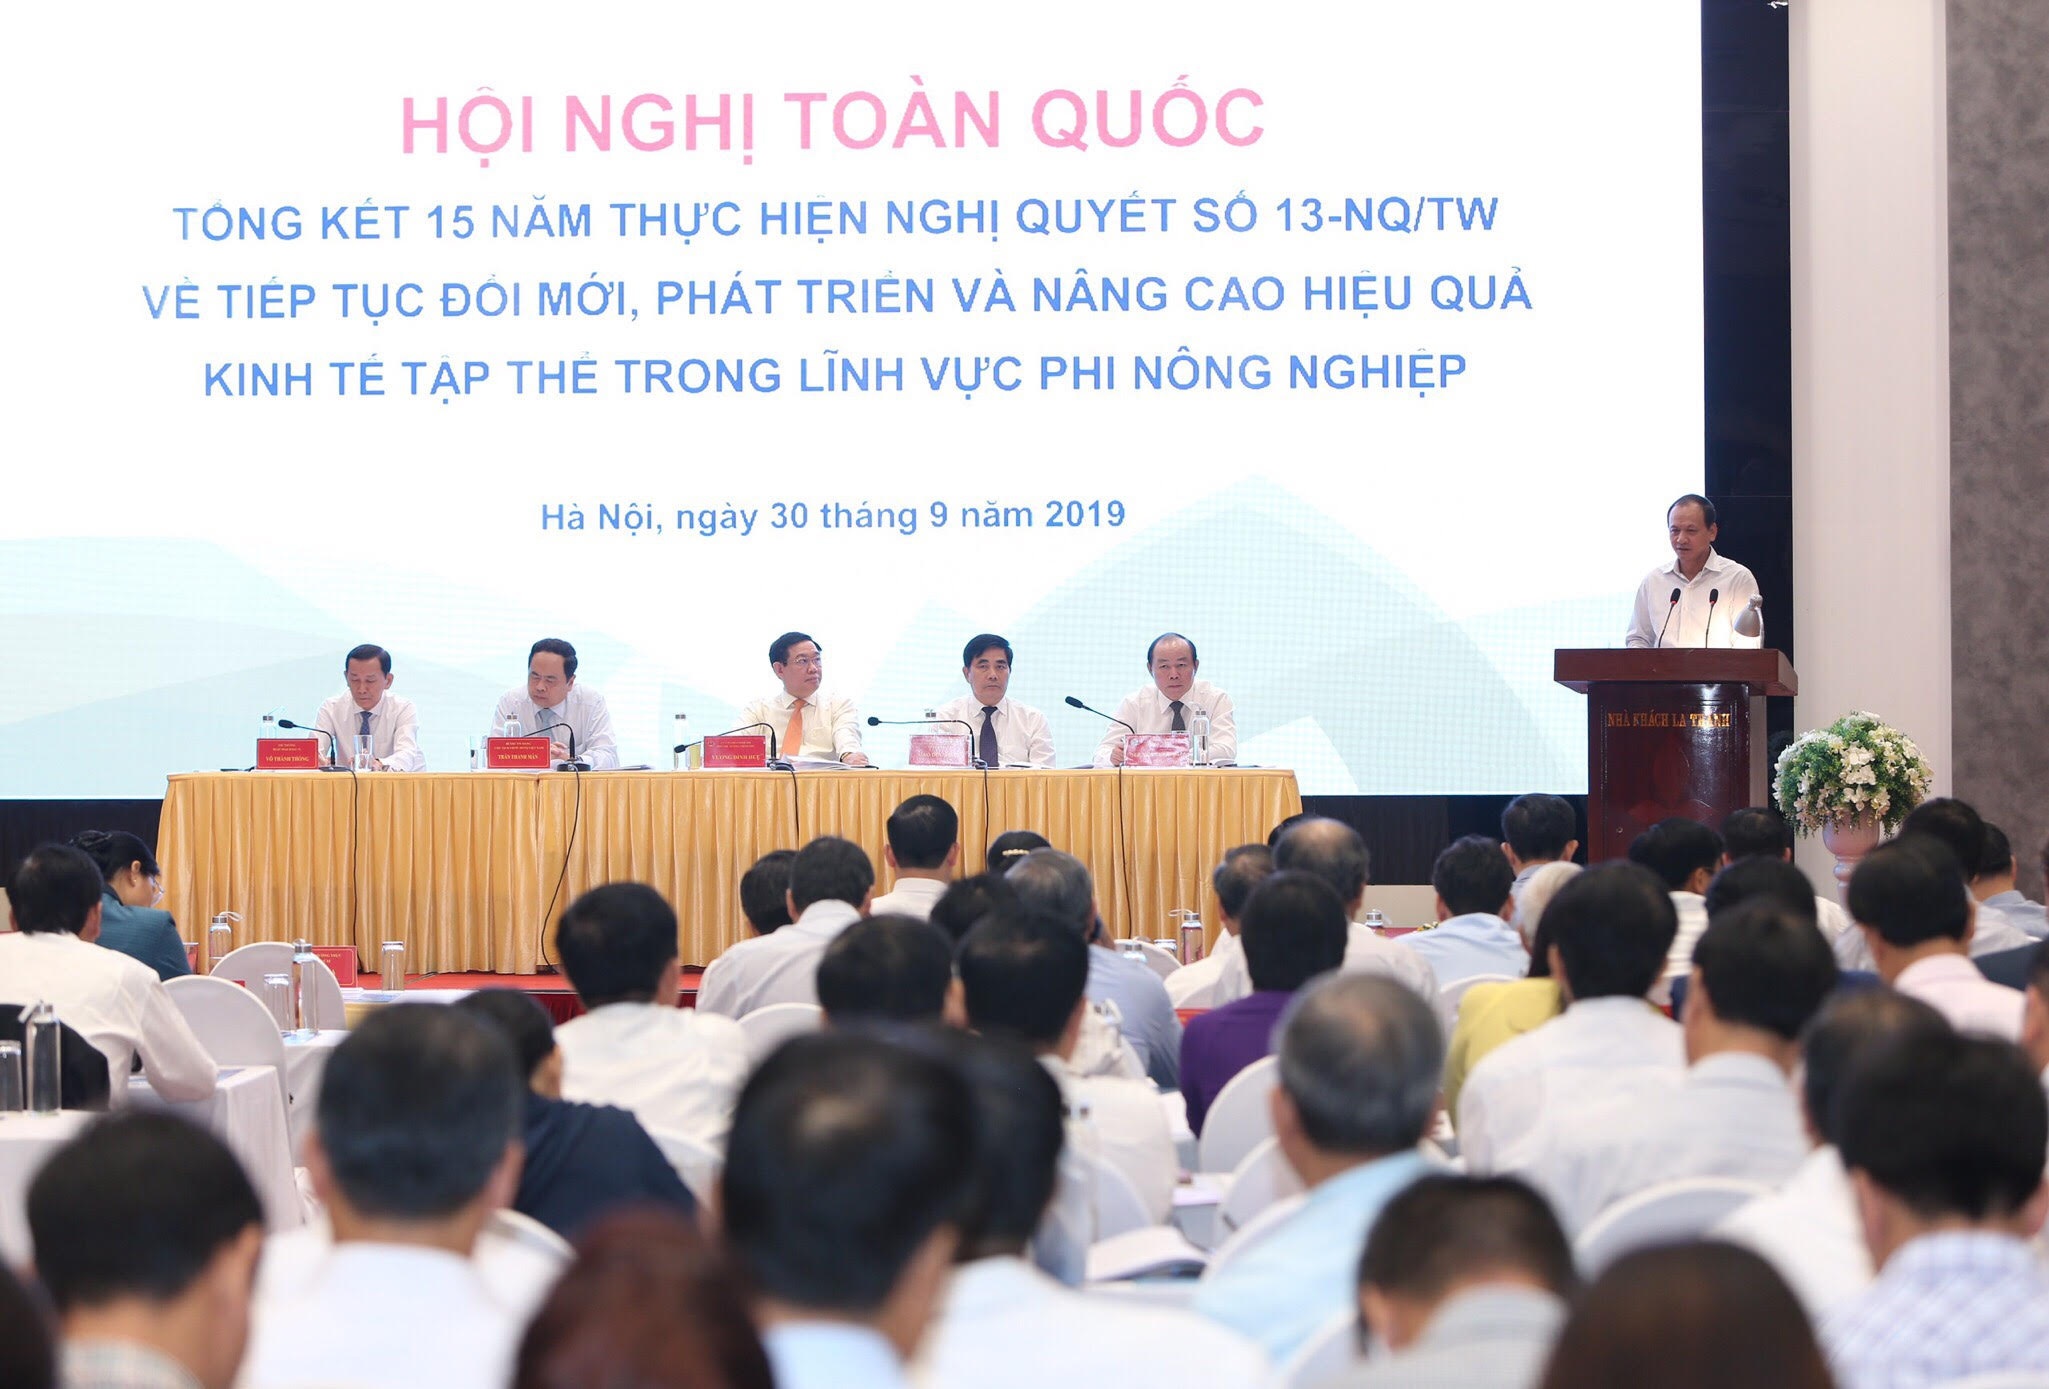 Kinh tế hợp tác xã Việt Nam nhỏ, siêu nhỏ và chưa minh bạch